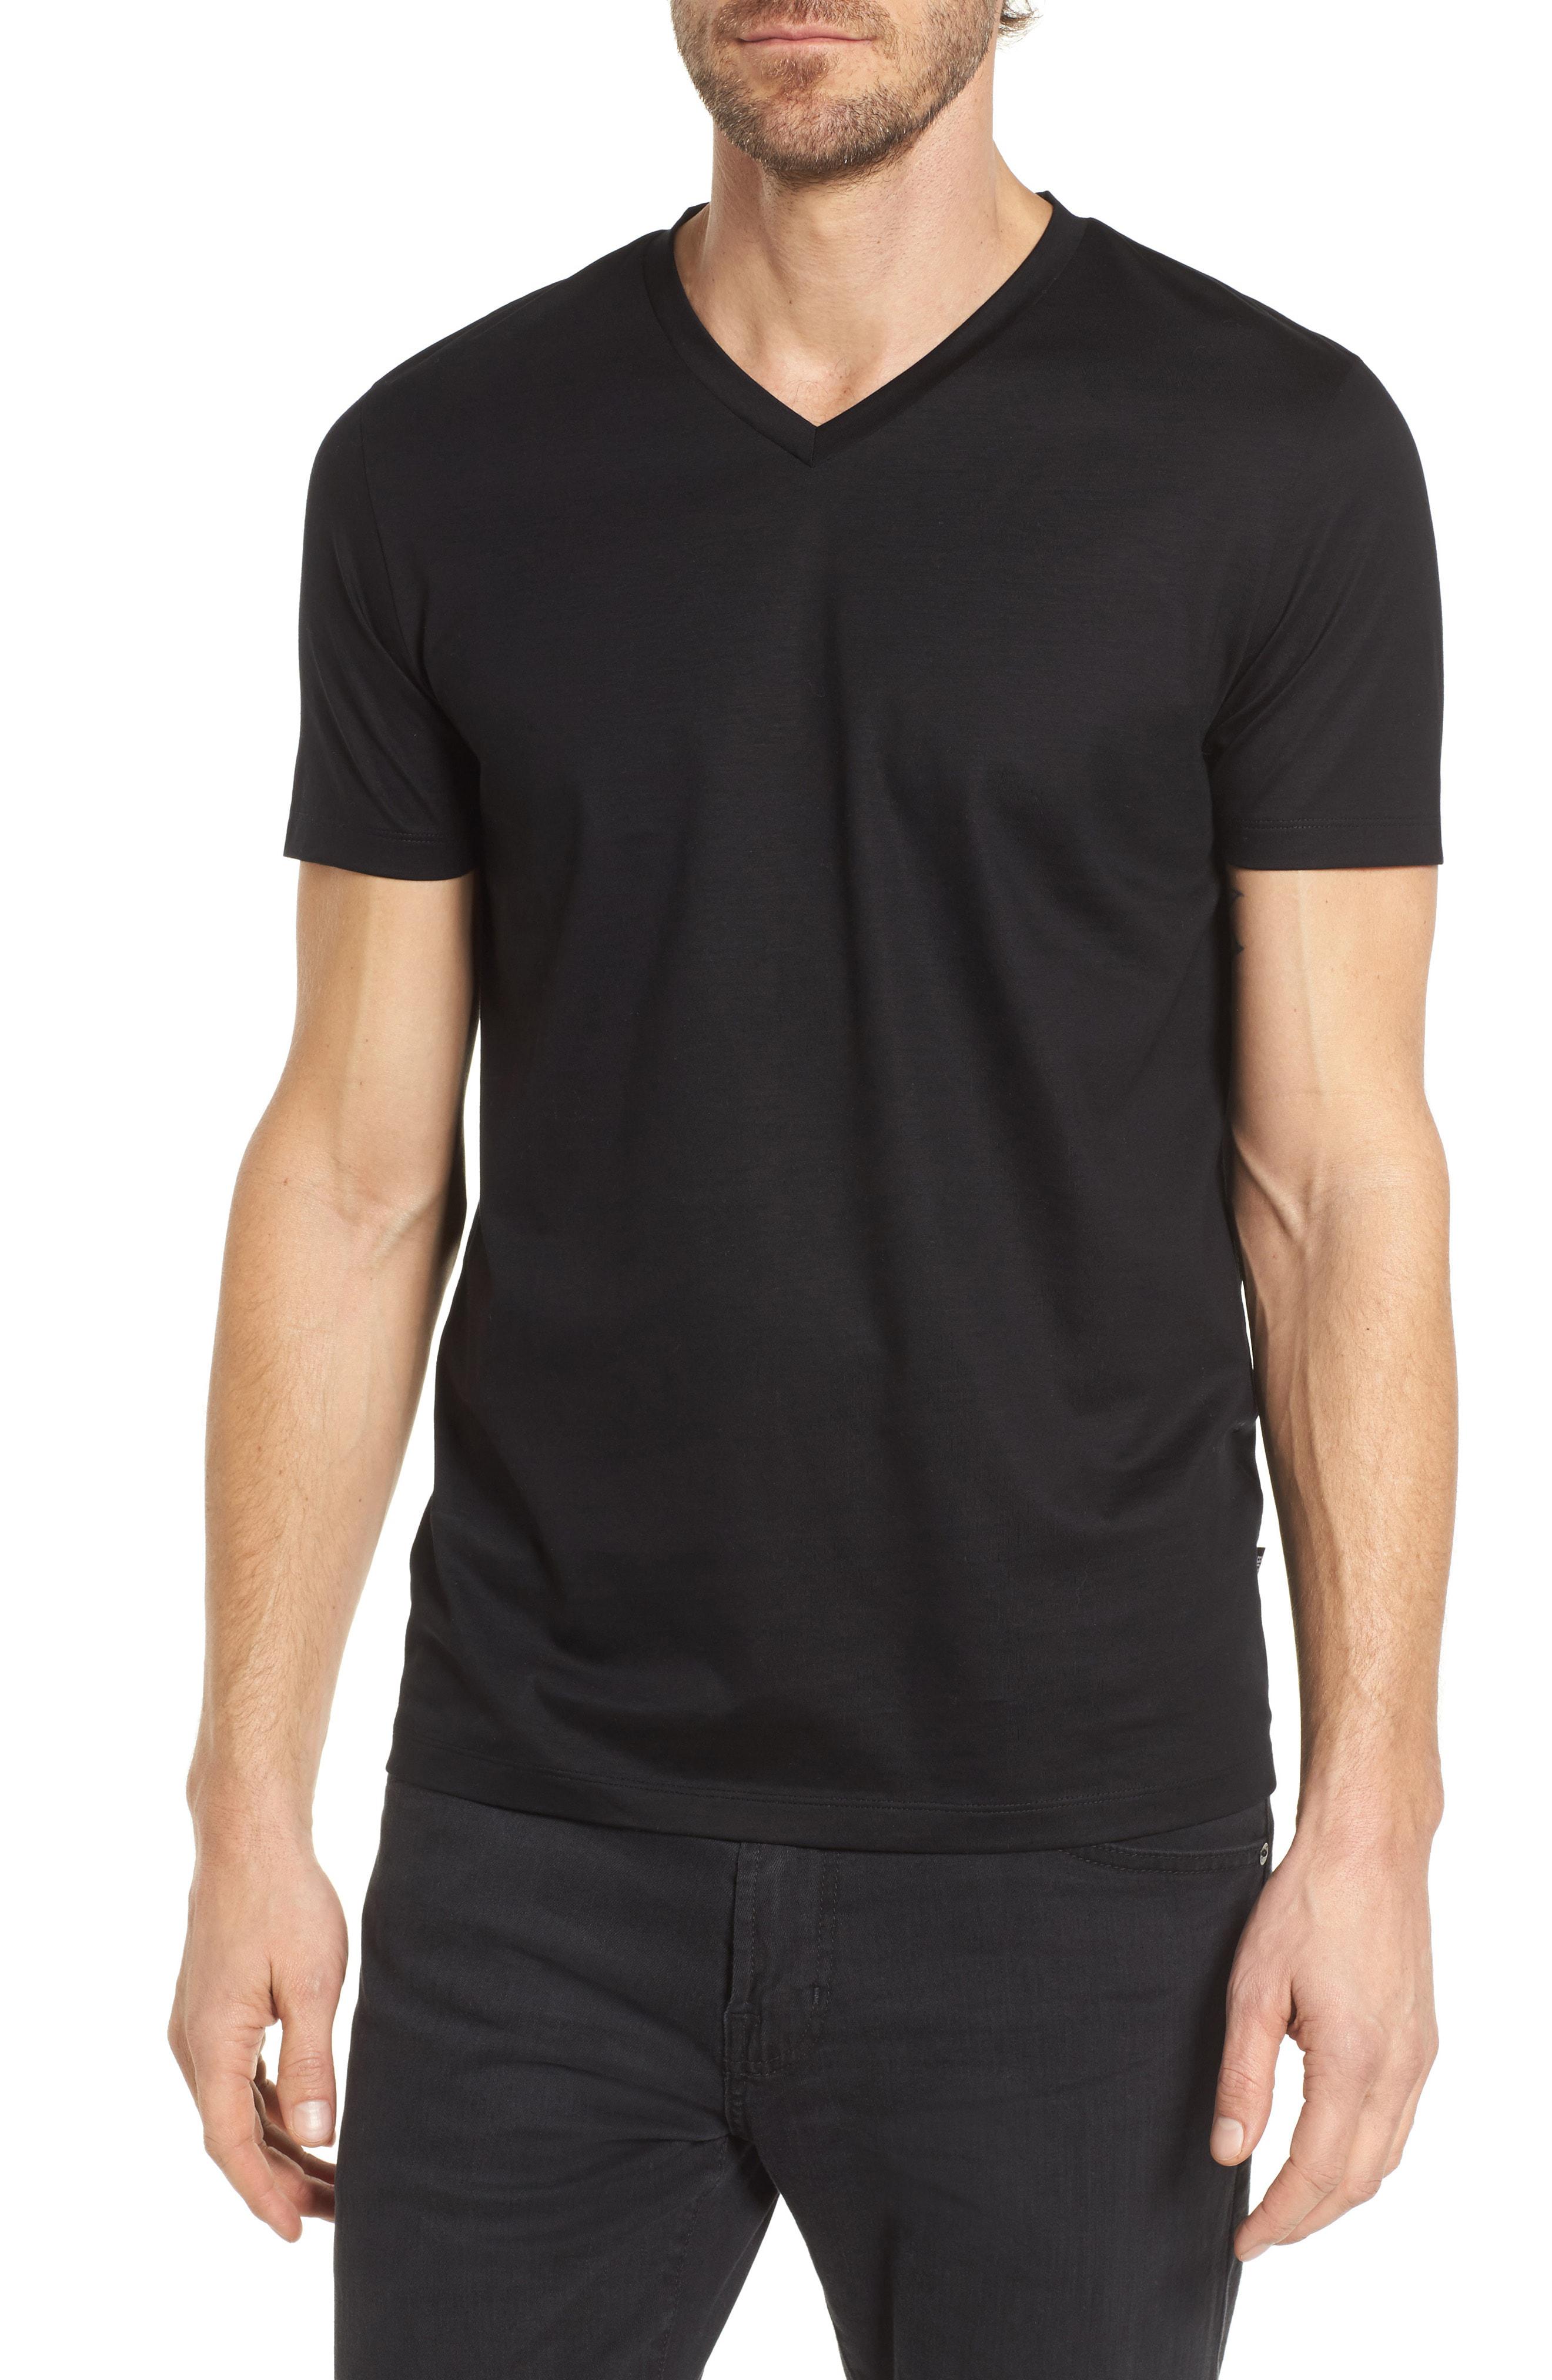 HUGO Cotton Stretch V-neck T-shirt in Charcoal Black (Black) for Men - Lyst